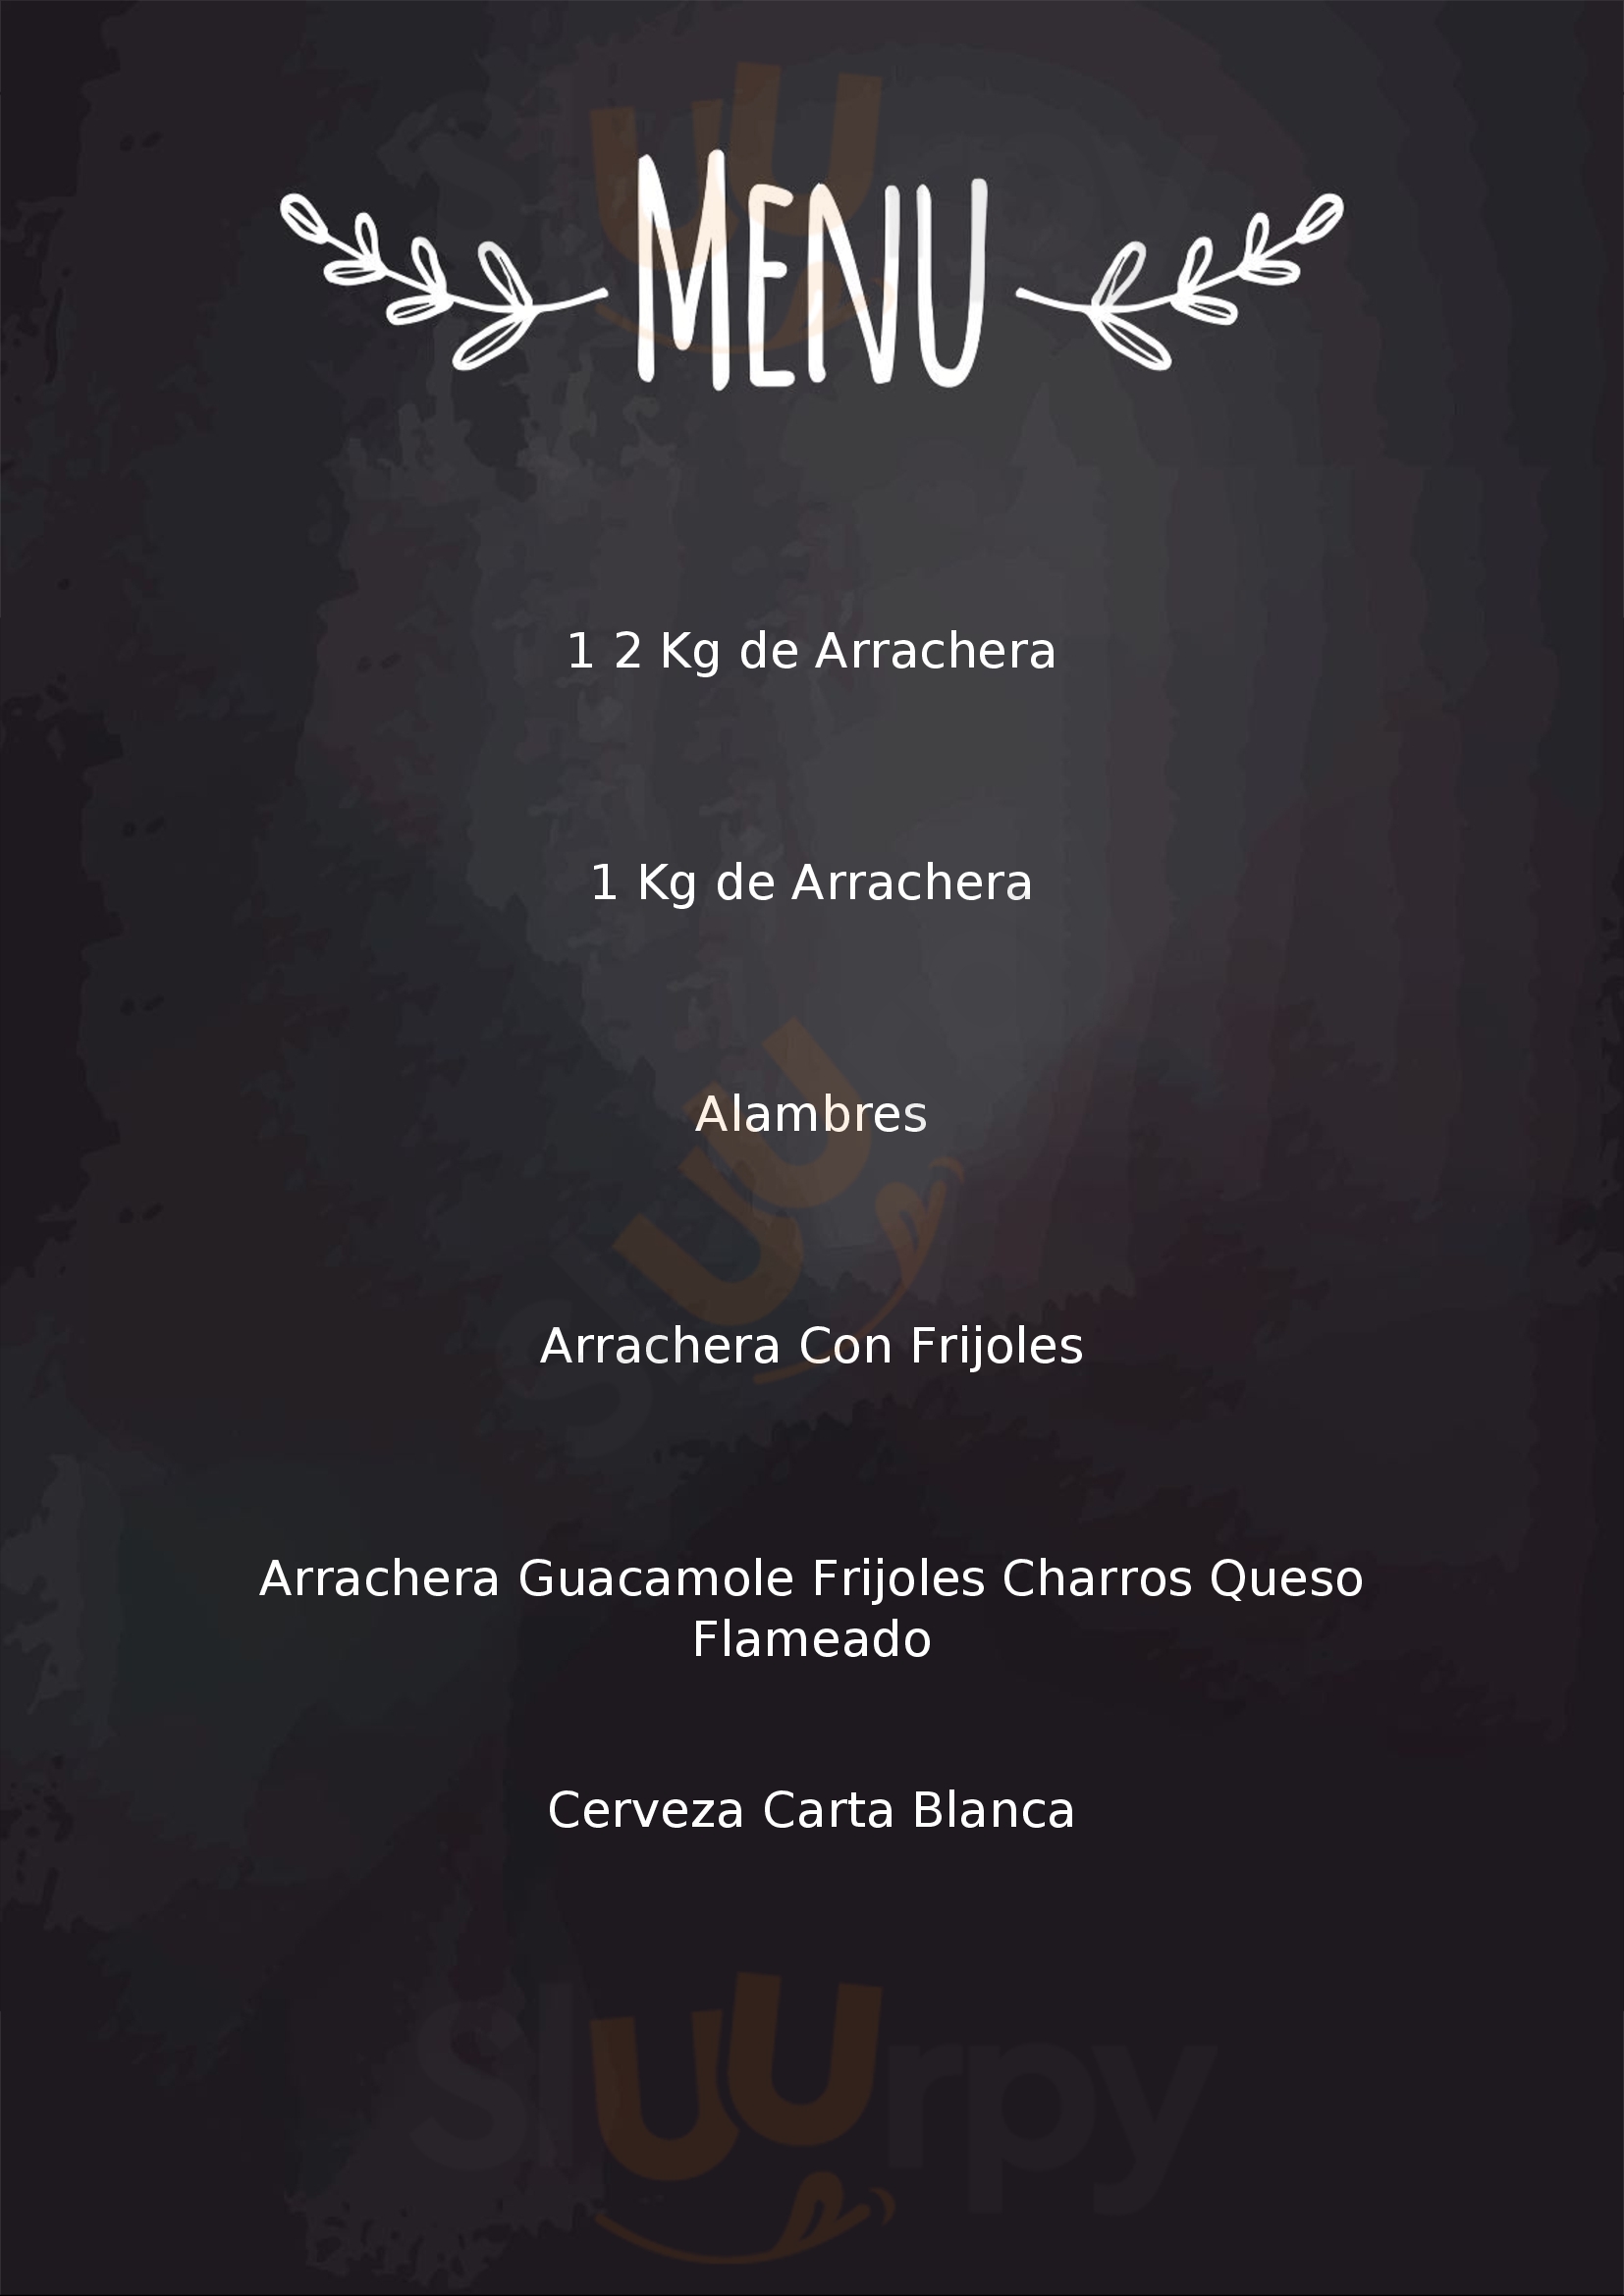 Parrillada Los Amigos Monterrey Menu - 1